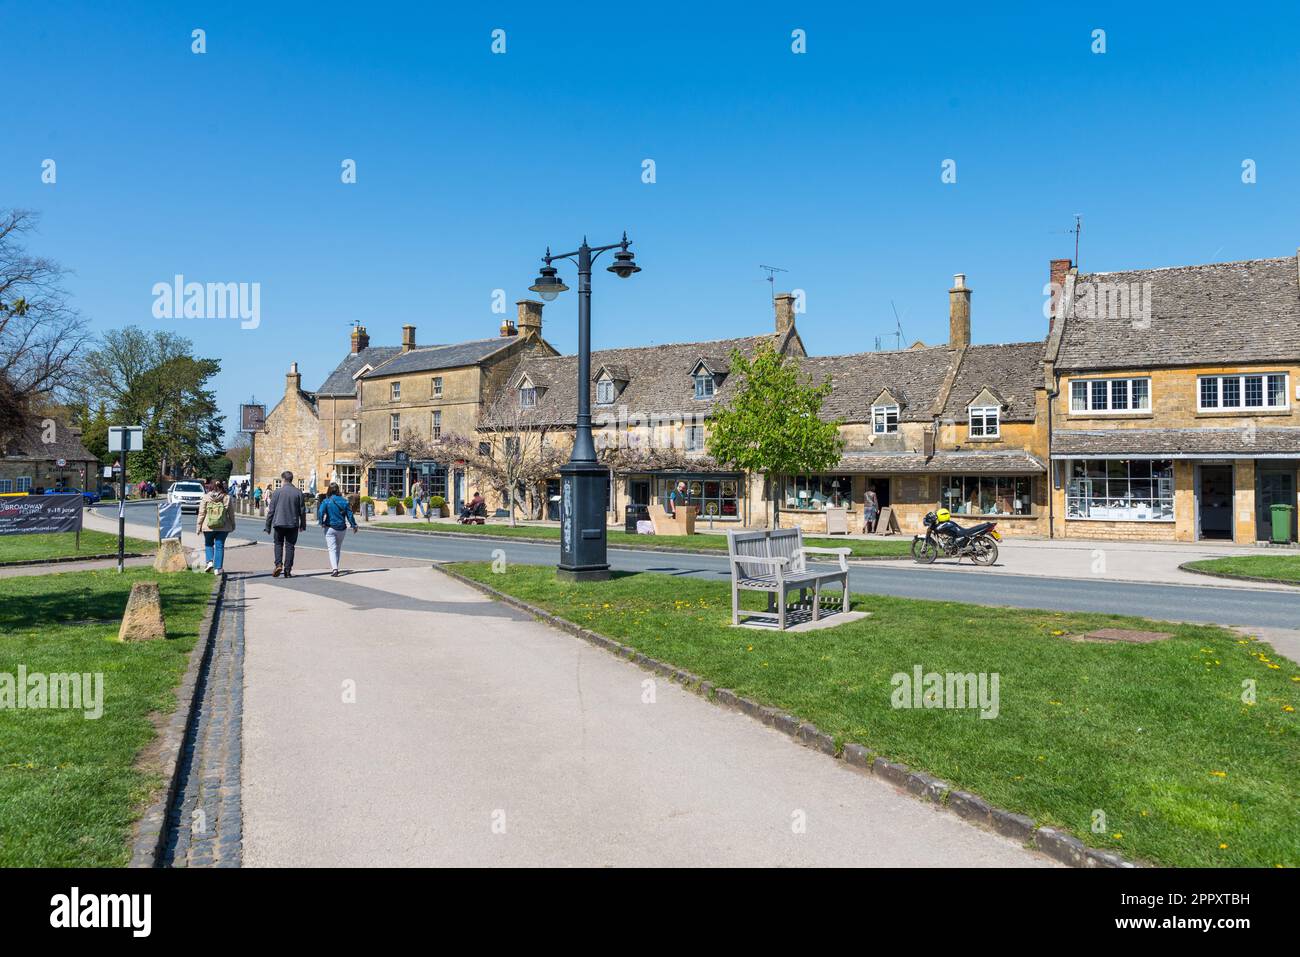 Le centre du joli village Cotswold de Broadway dans le Worcestershire, Angleterre, Royaume-Uni Banque D'Images